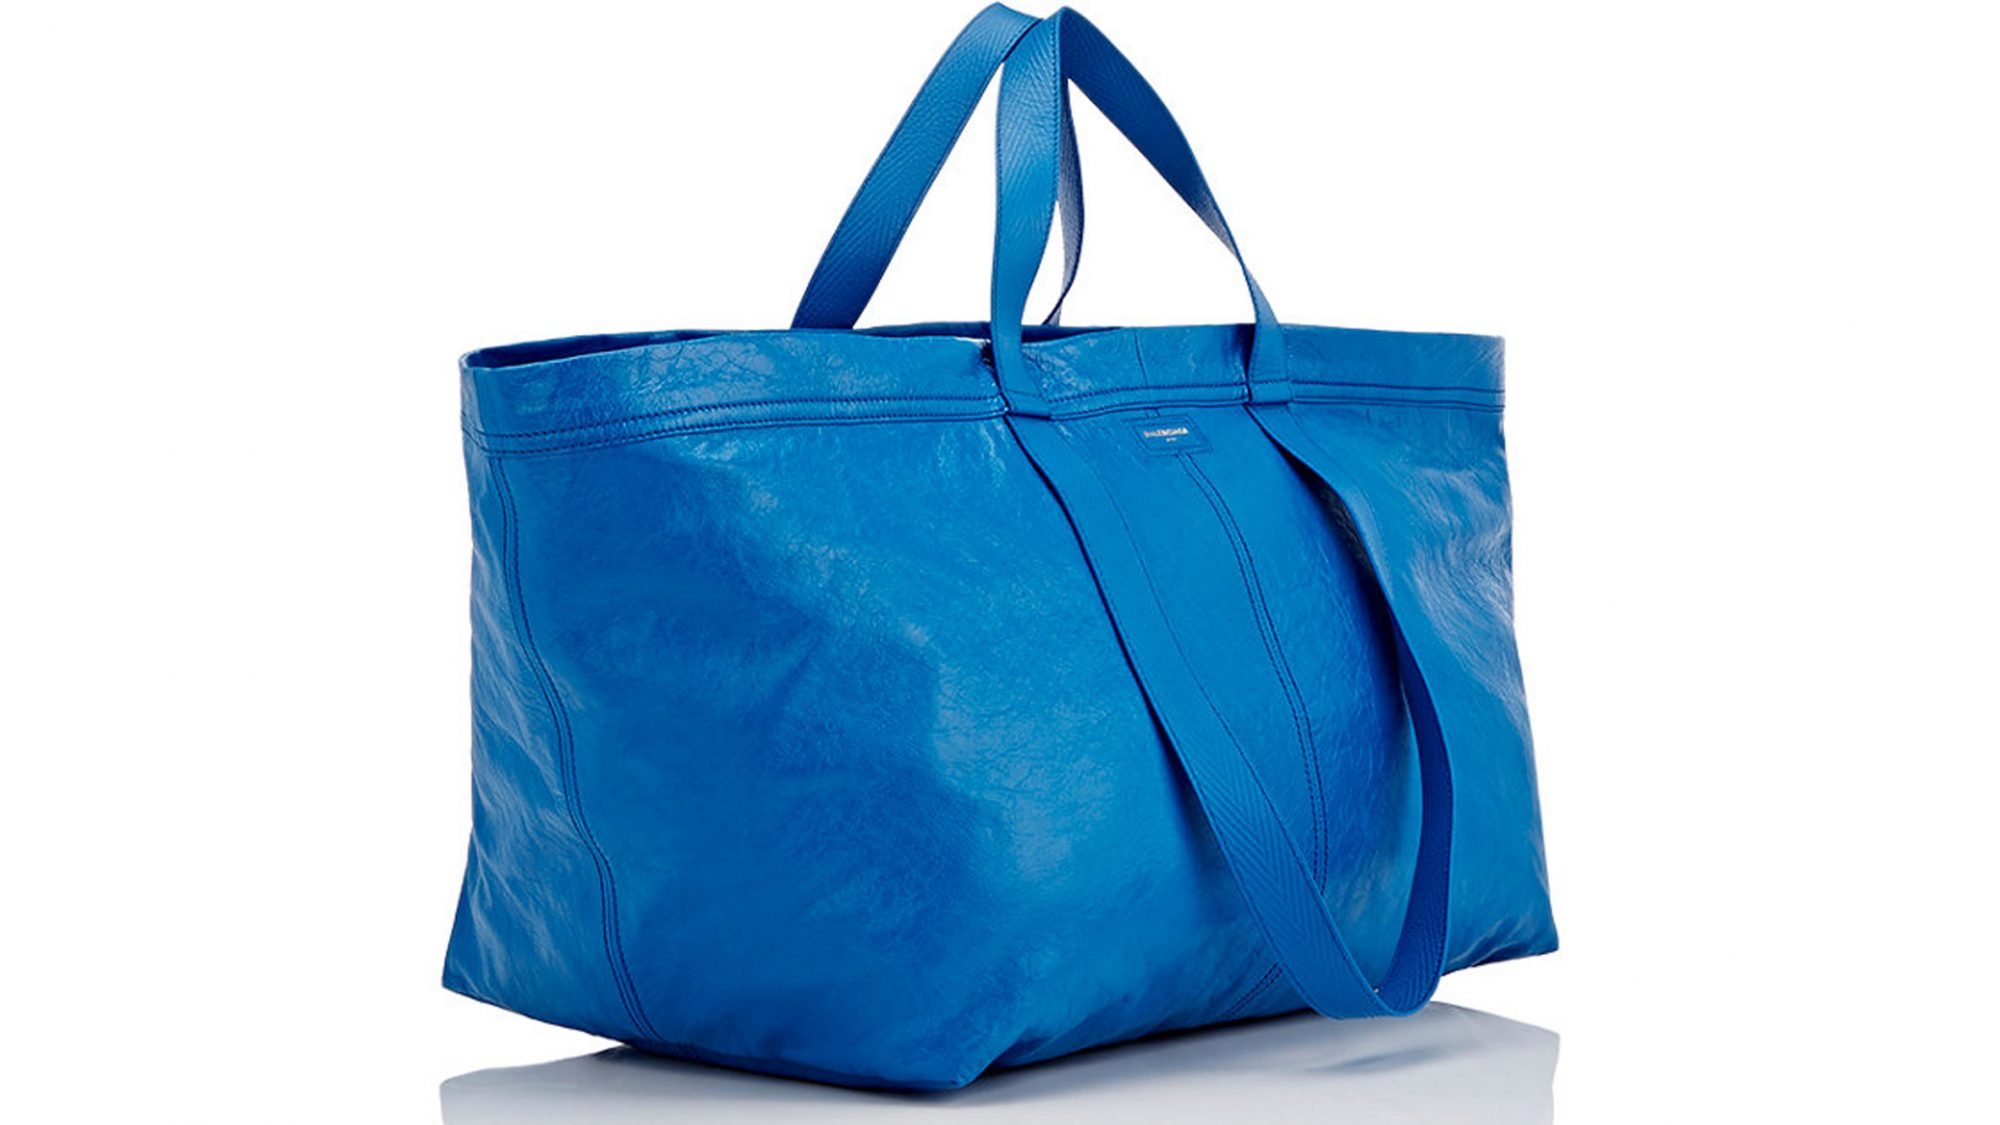 O saco foi colocado à venda no site da Balenciaga por 2.145 dólares (cerca de 2.000 euros).